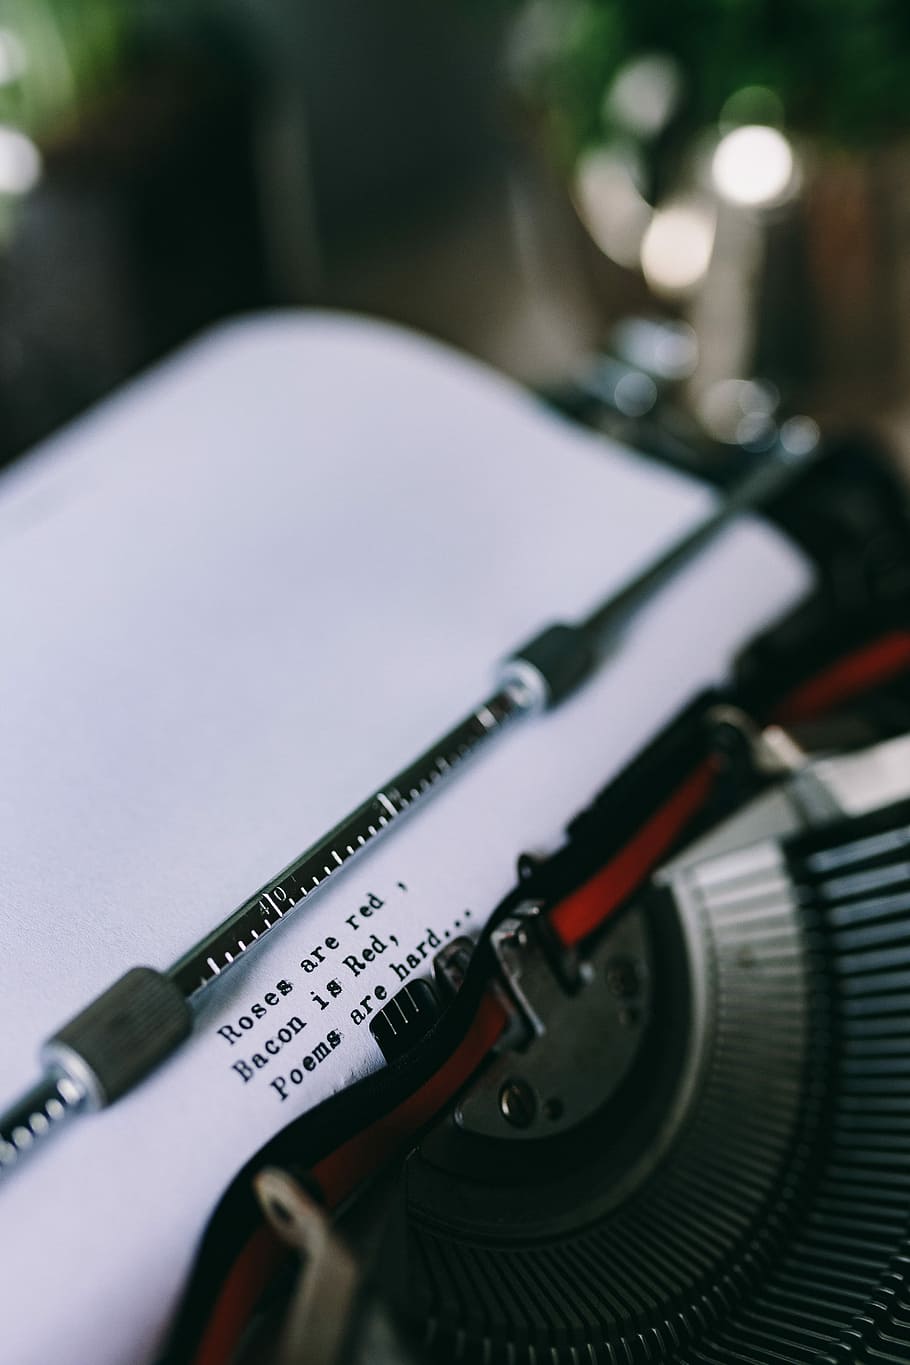 vista, digitando citações, velho, máquina de escrever, Closeup, digitando, citações, vintage, citação, tecnologia